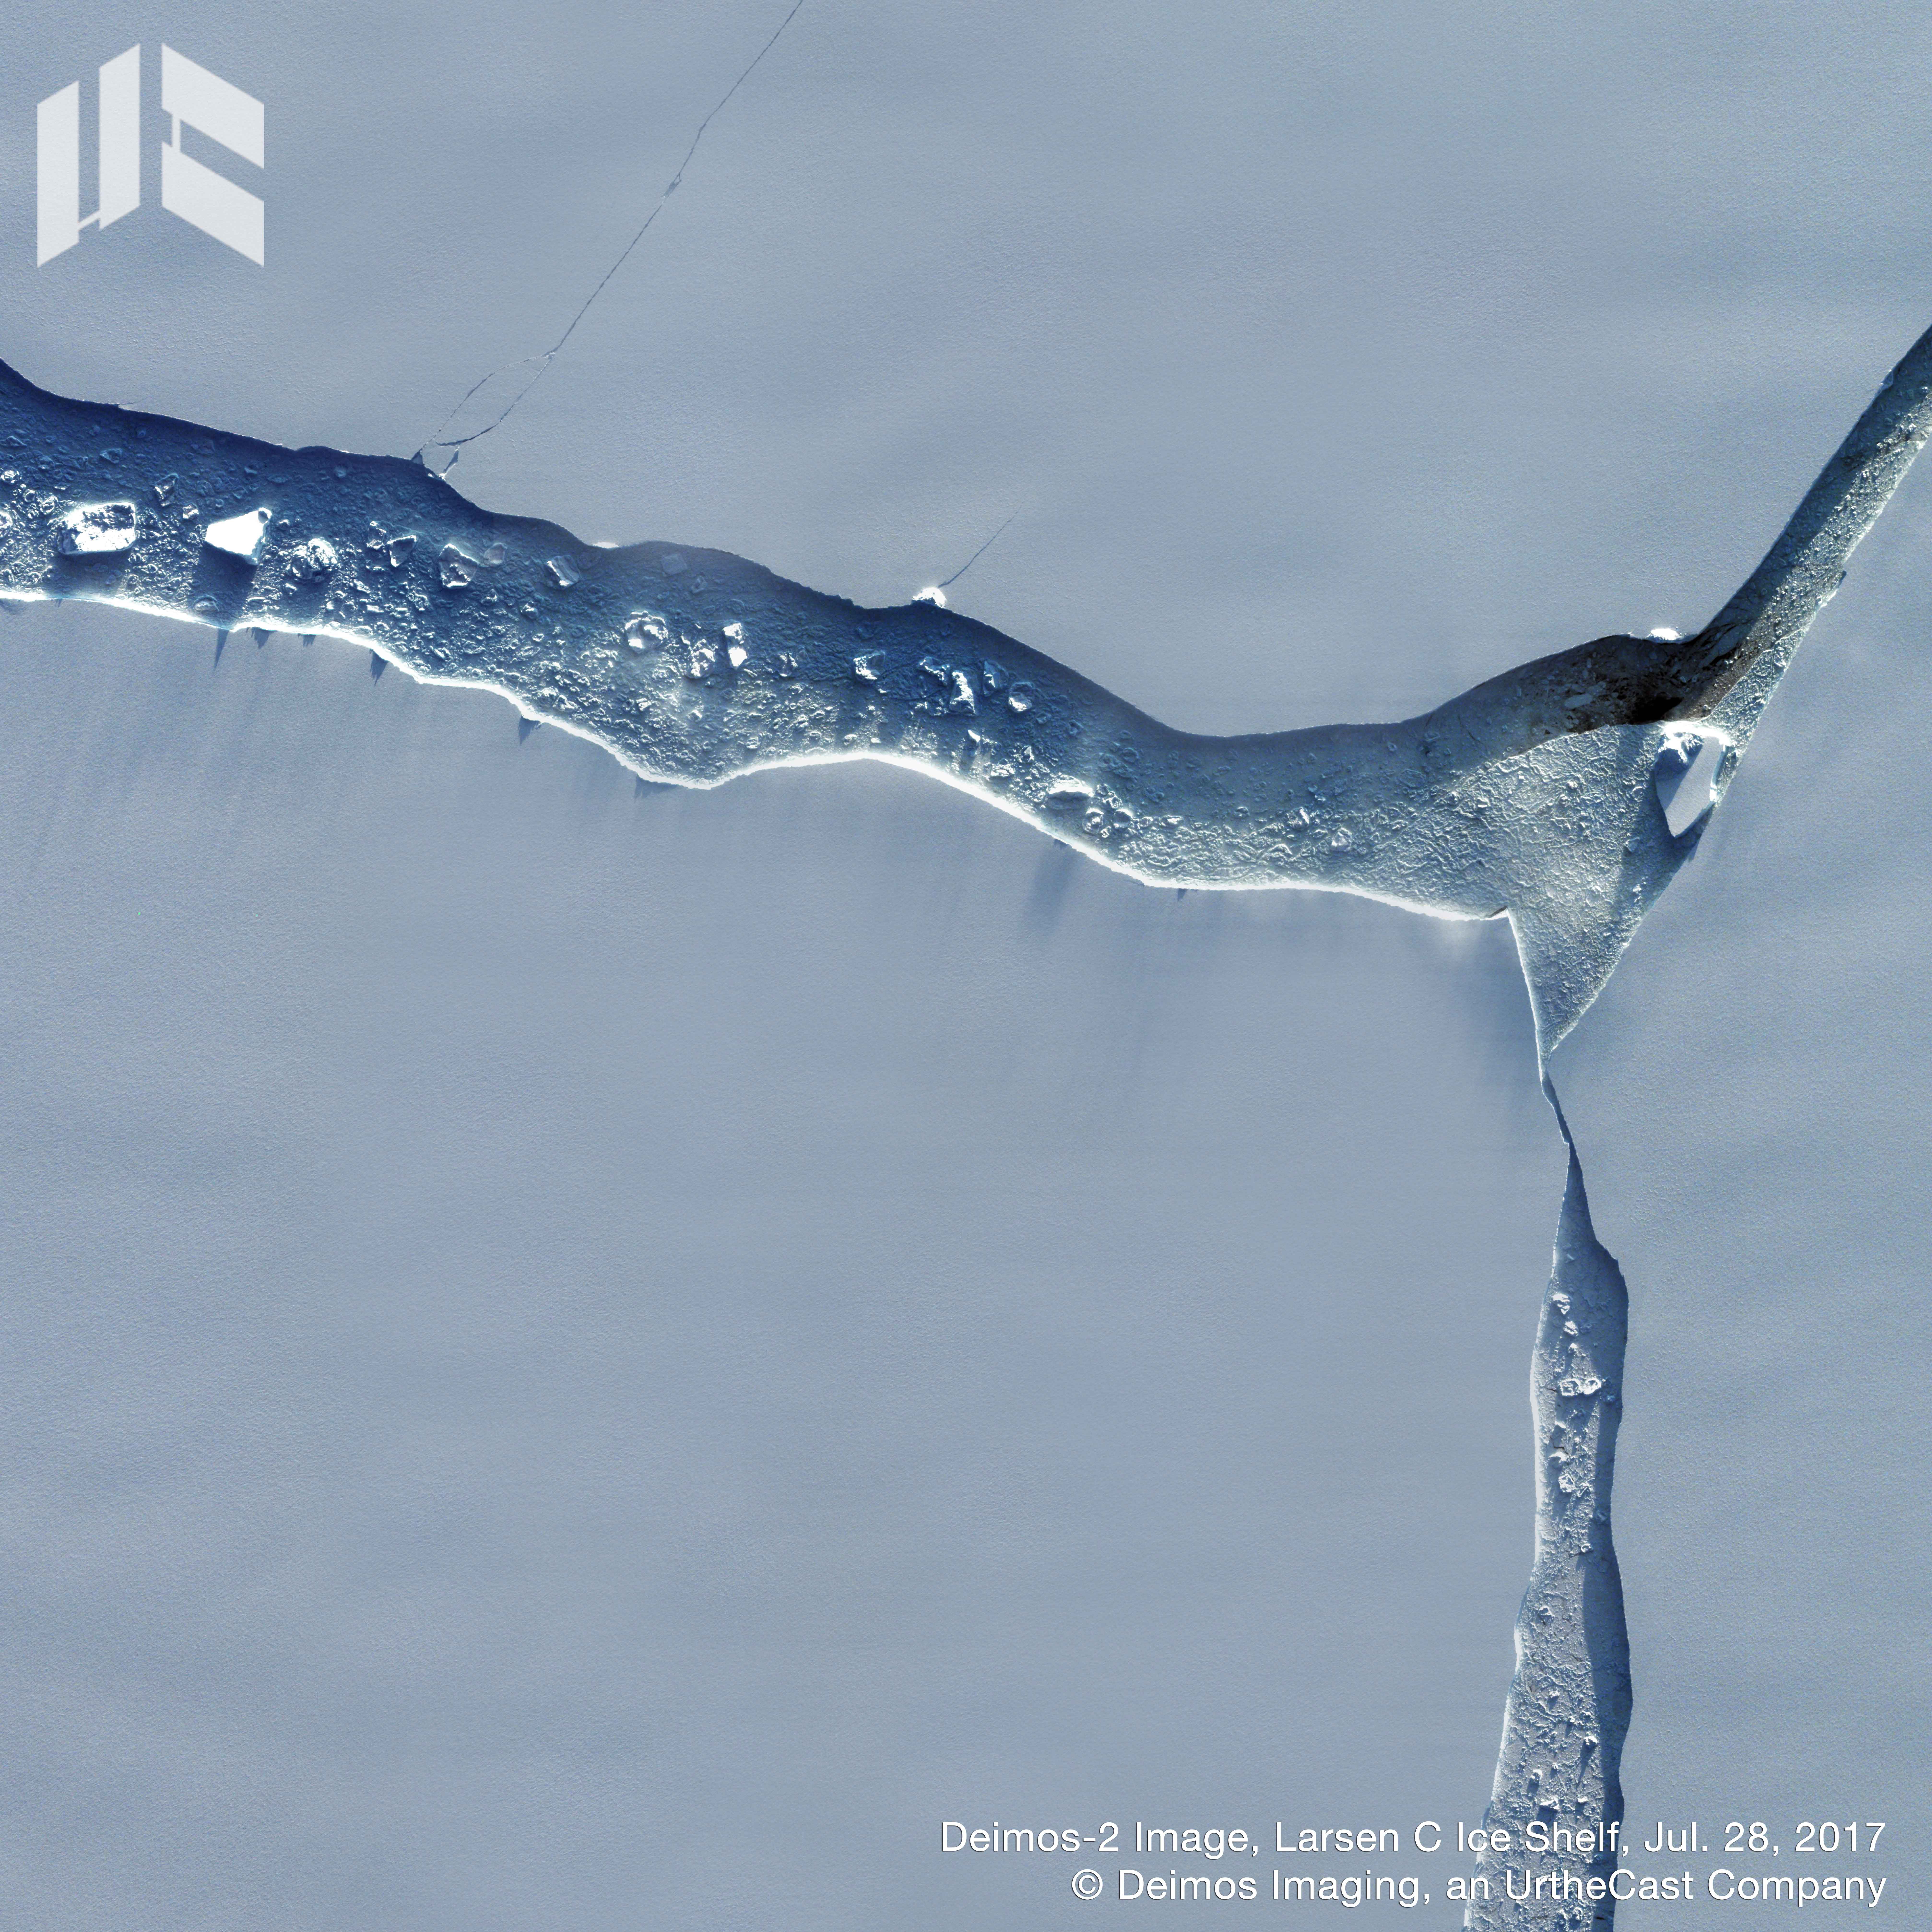 DE2-Larsen C Ice Shelf Crack- 20170731.jpg